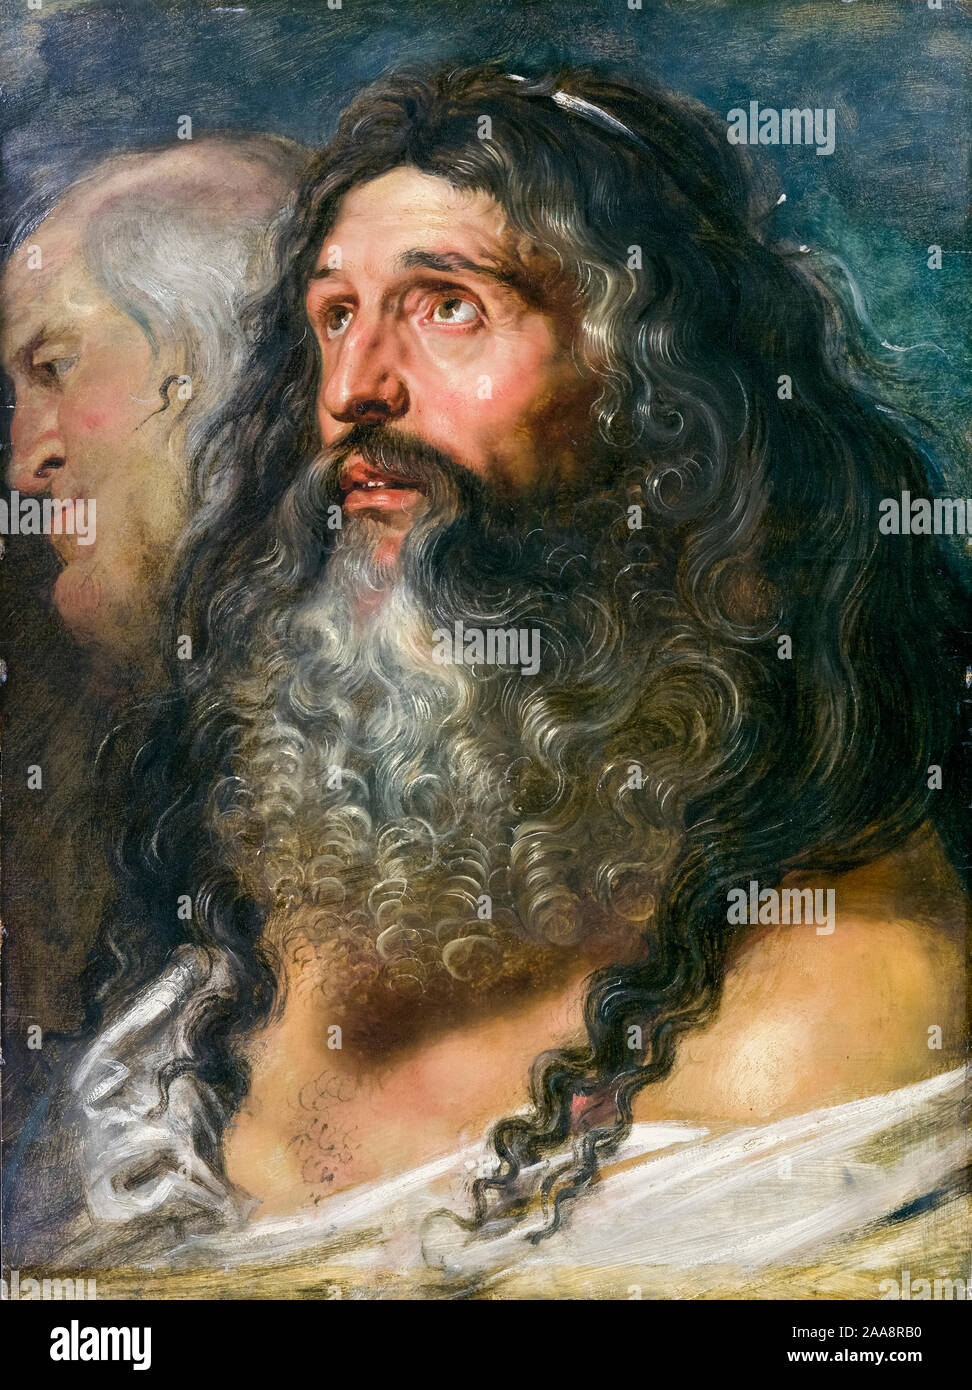 Peter Paul Rubens, étude de deux têtes, portrait, 1609 Banque D'Images